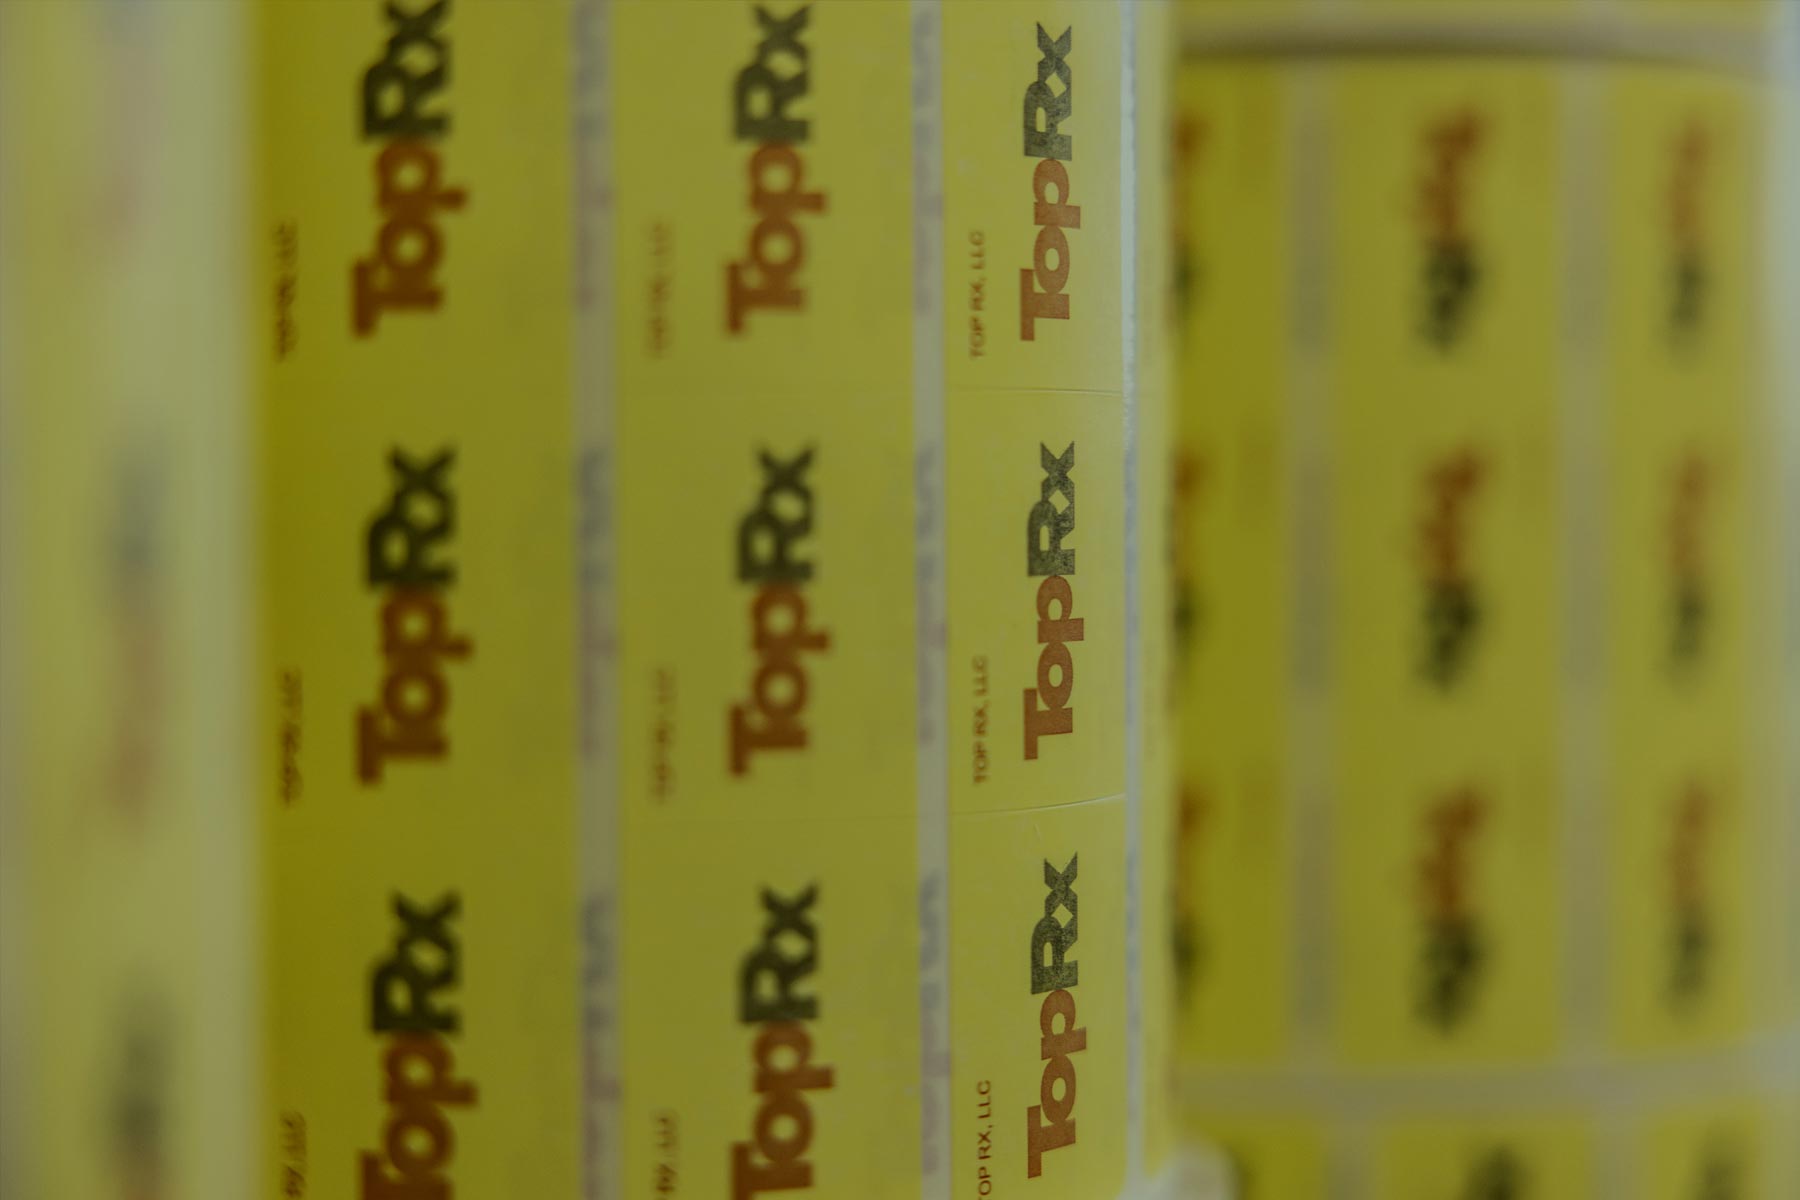 TopRx packaging